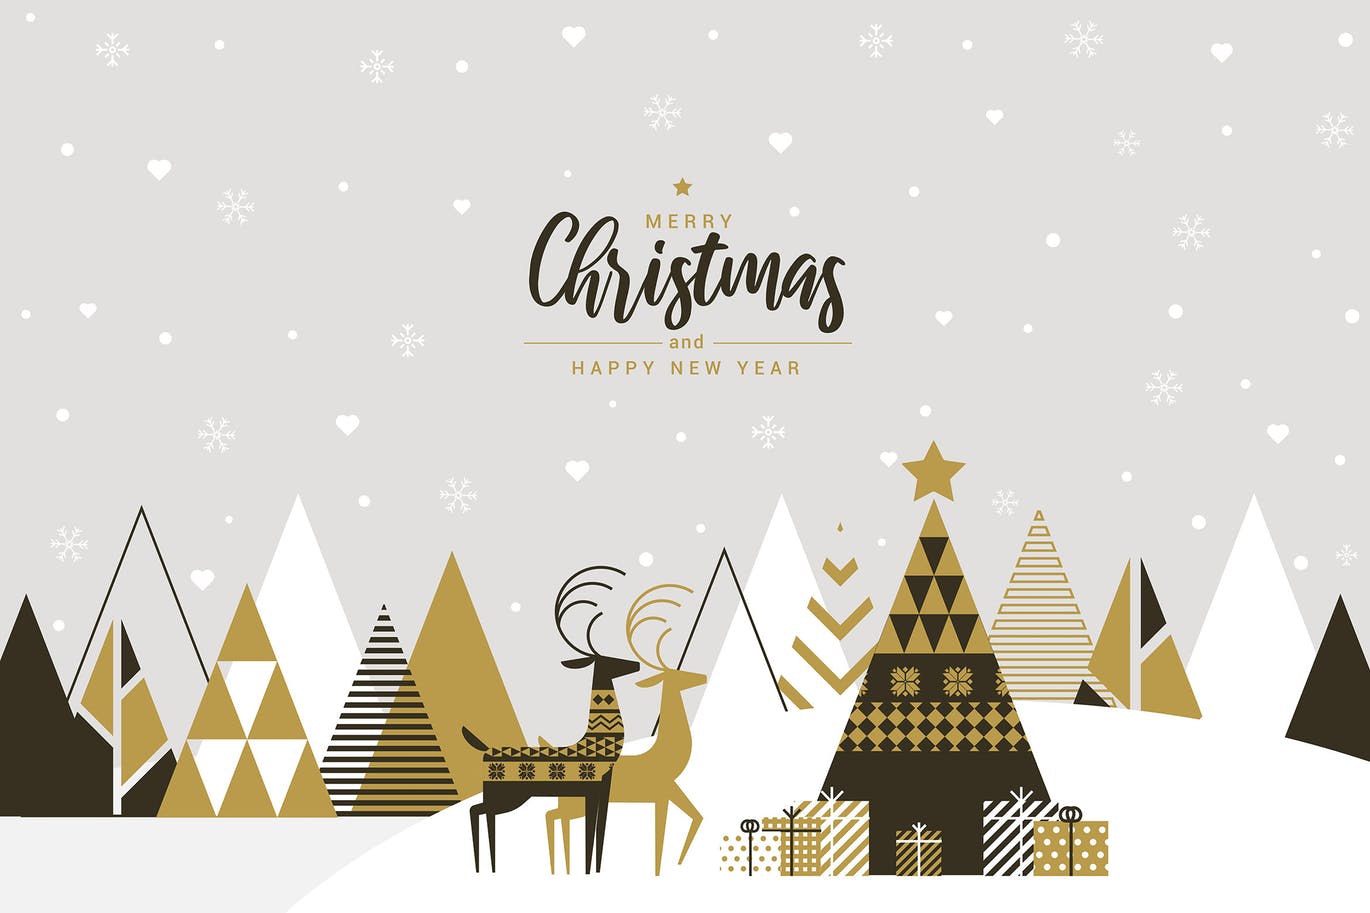 扁平设计风格创意圣诞节贺卡设计模板 Flat design Creative Christmas greeting card插图